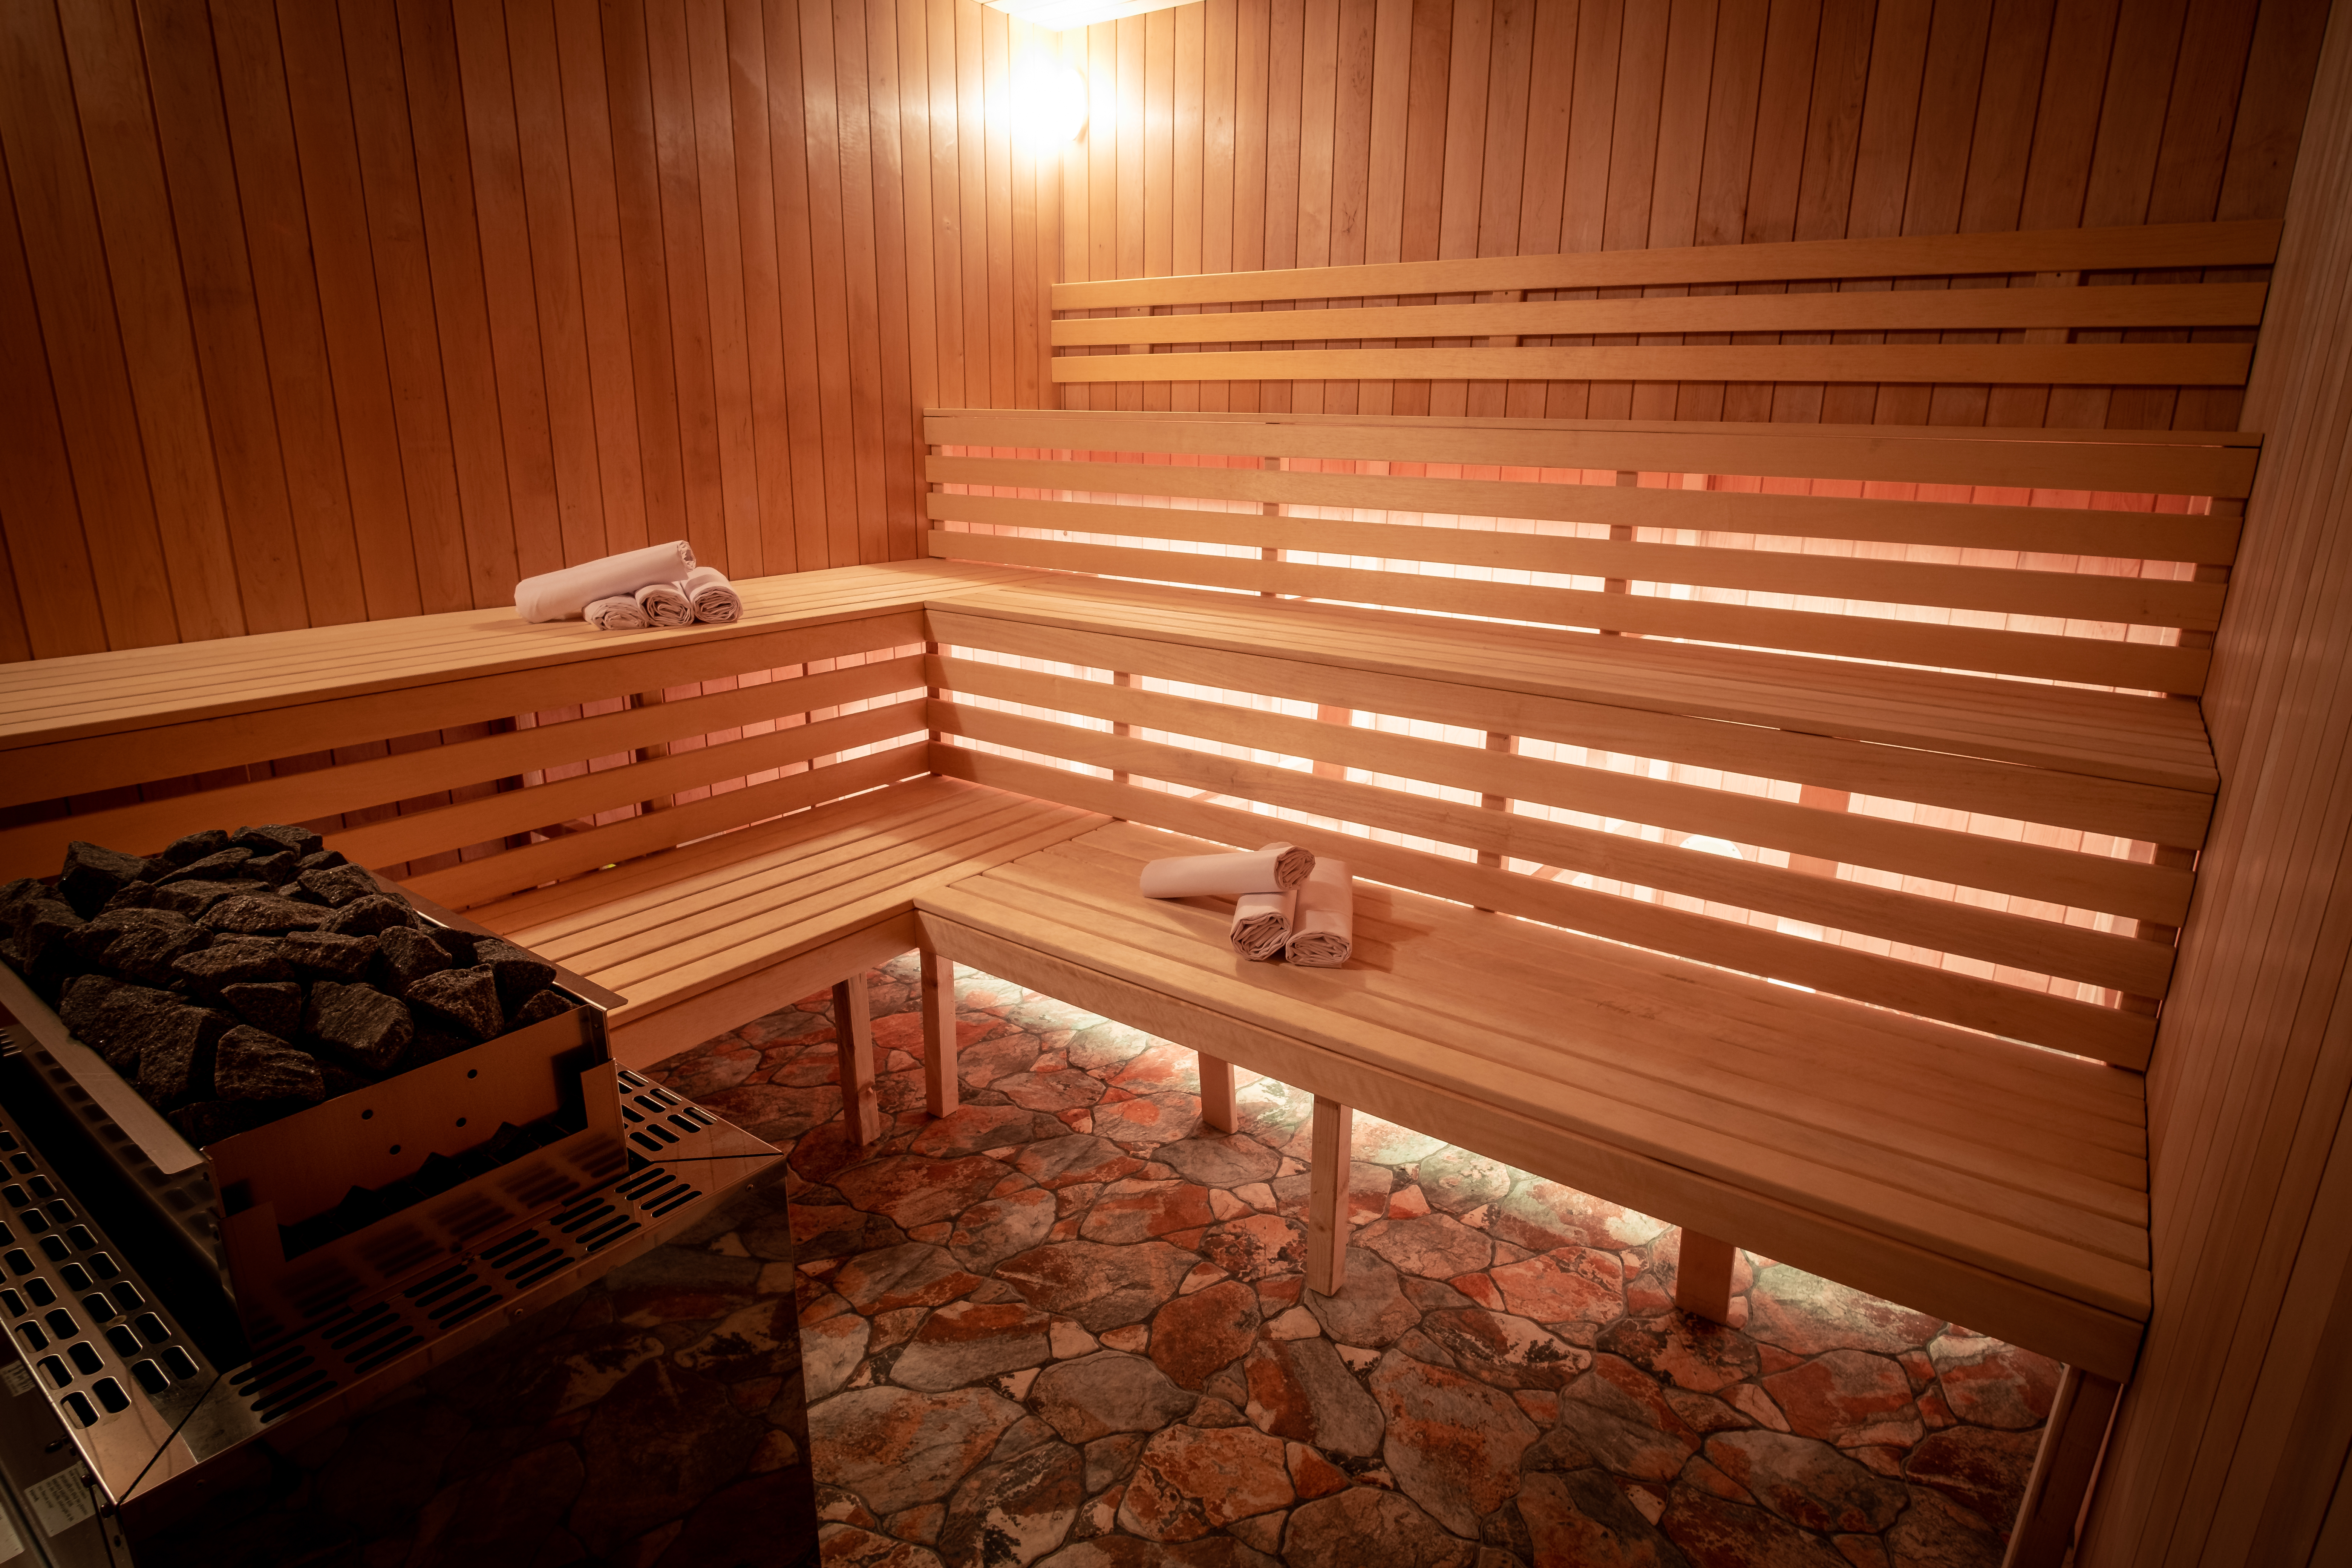 Home Sauna